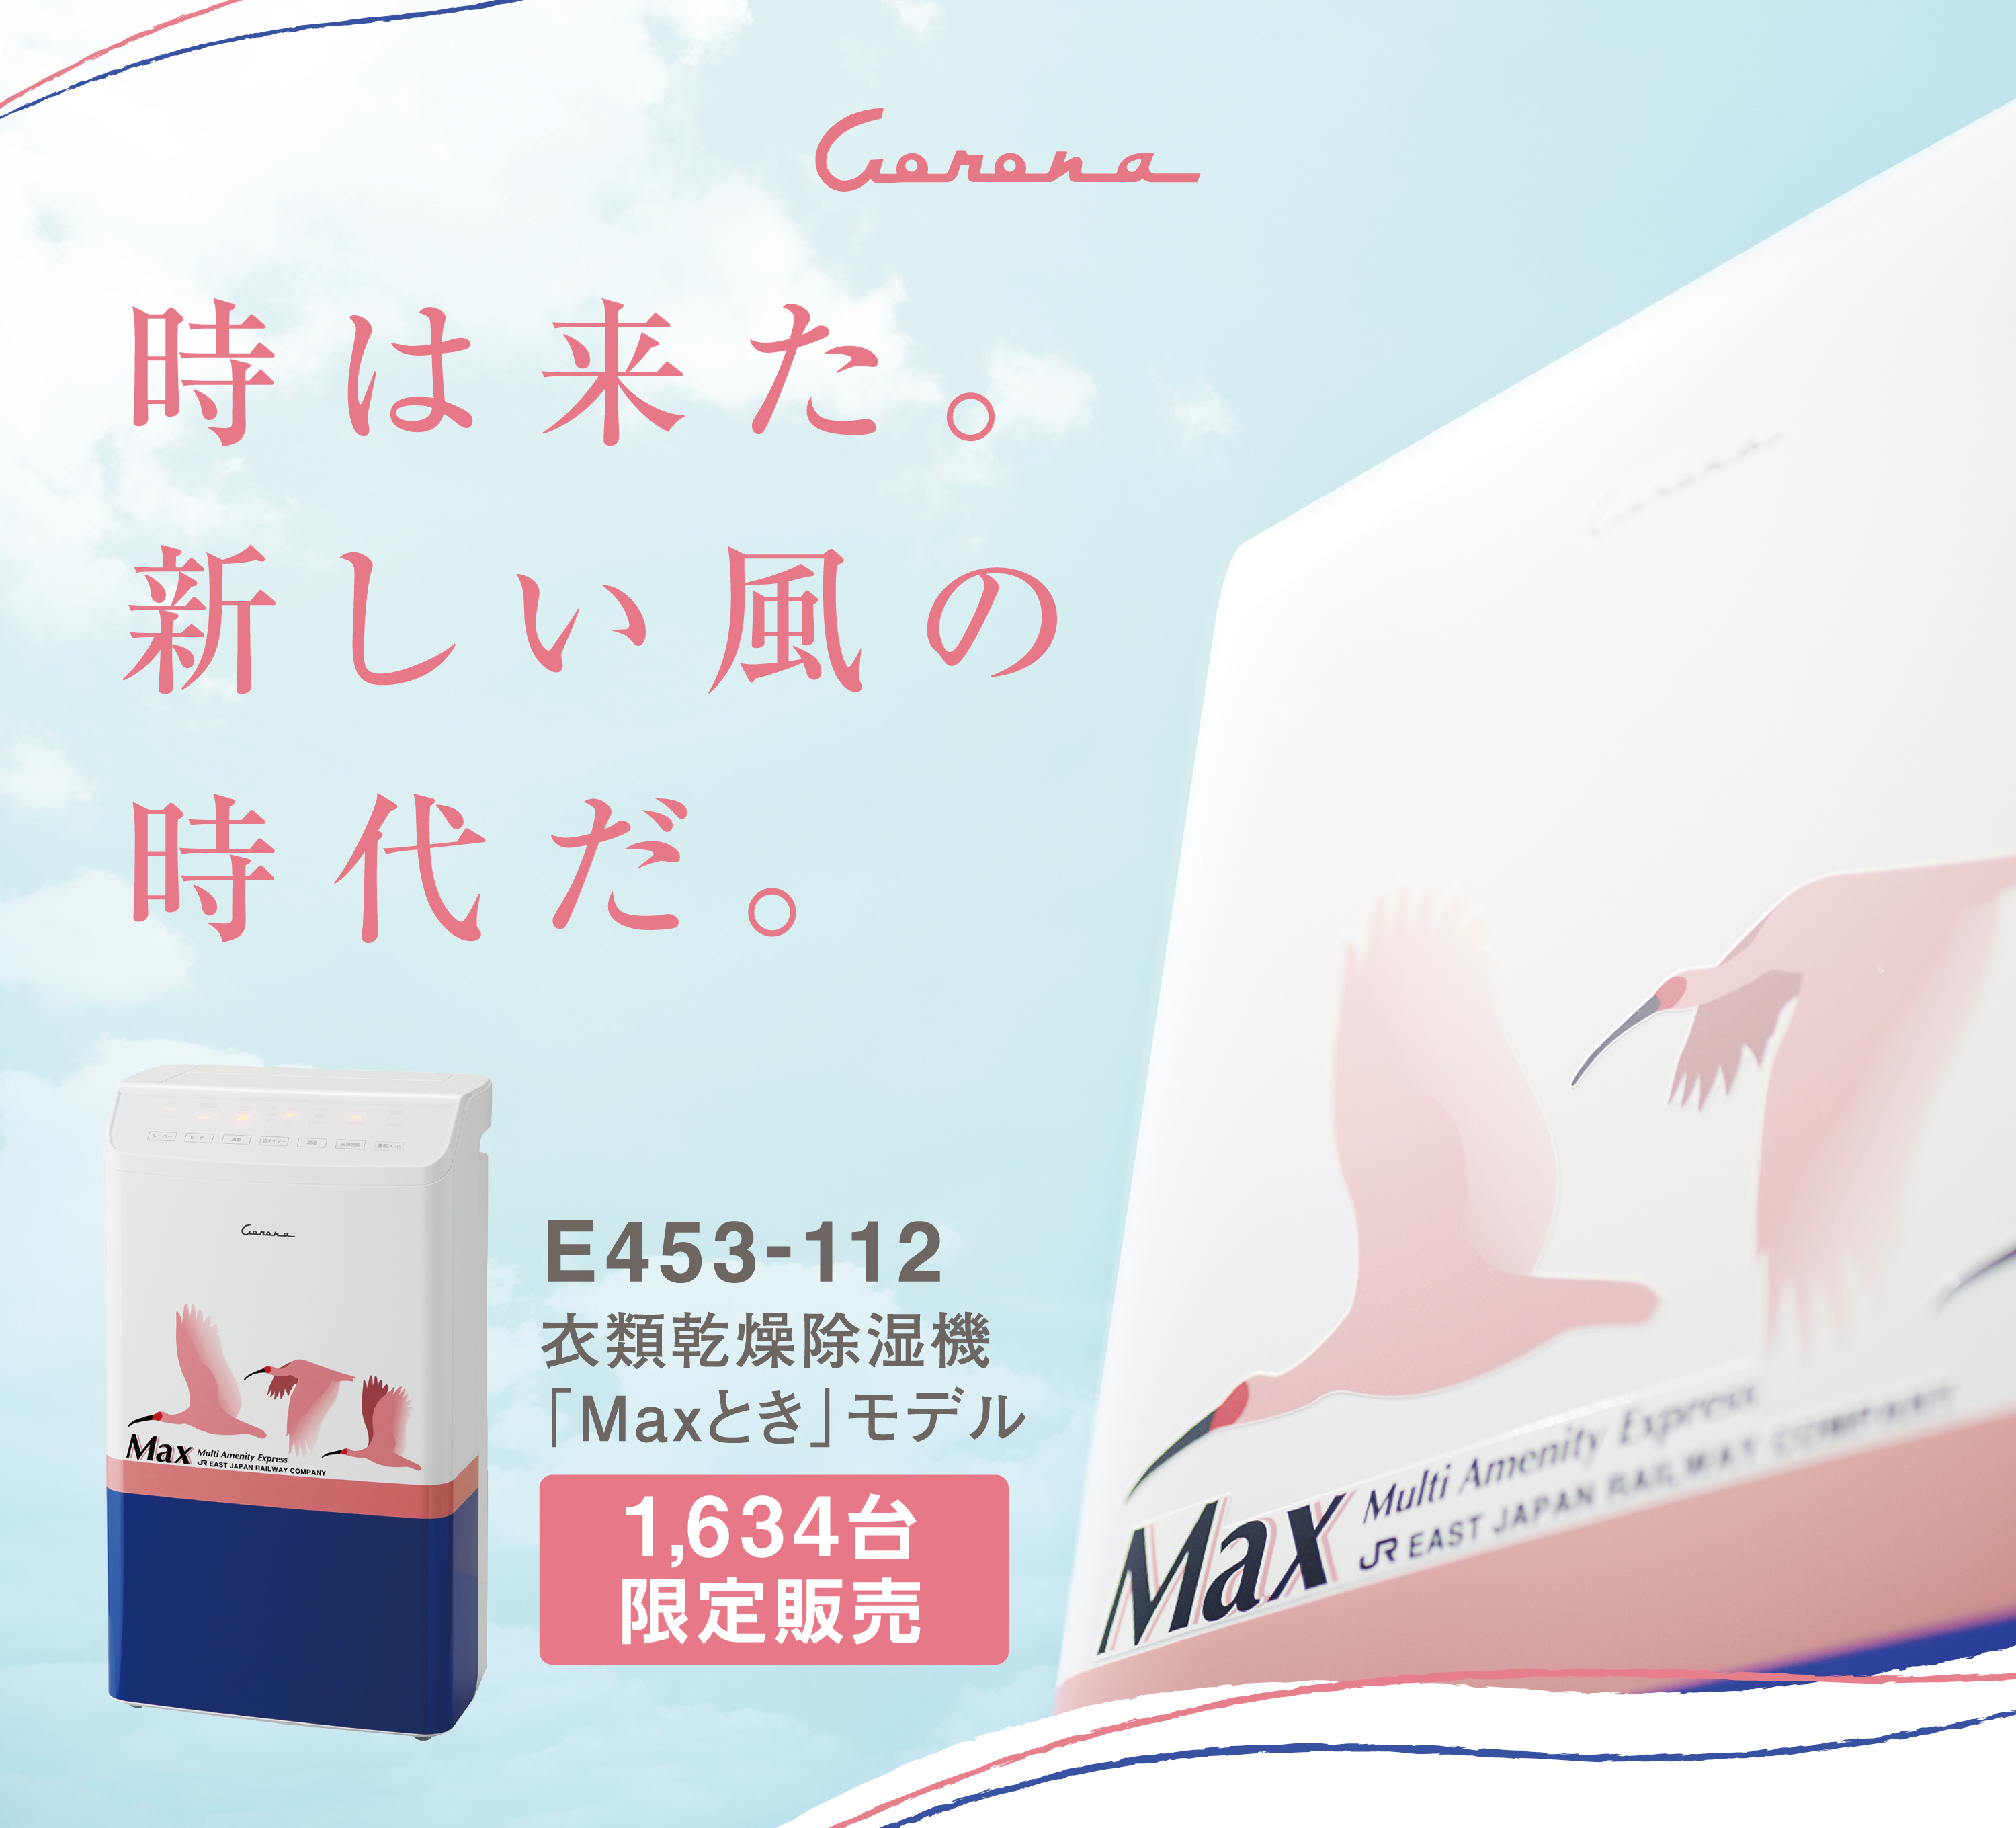 上越新幹線「Maxとき」モデルの衣類乾燥除湿機を限定販売！